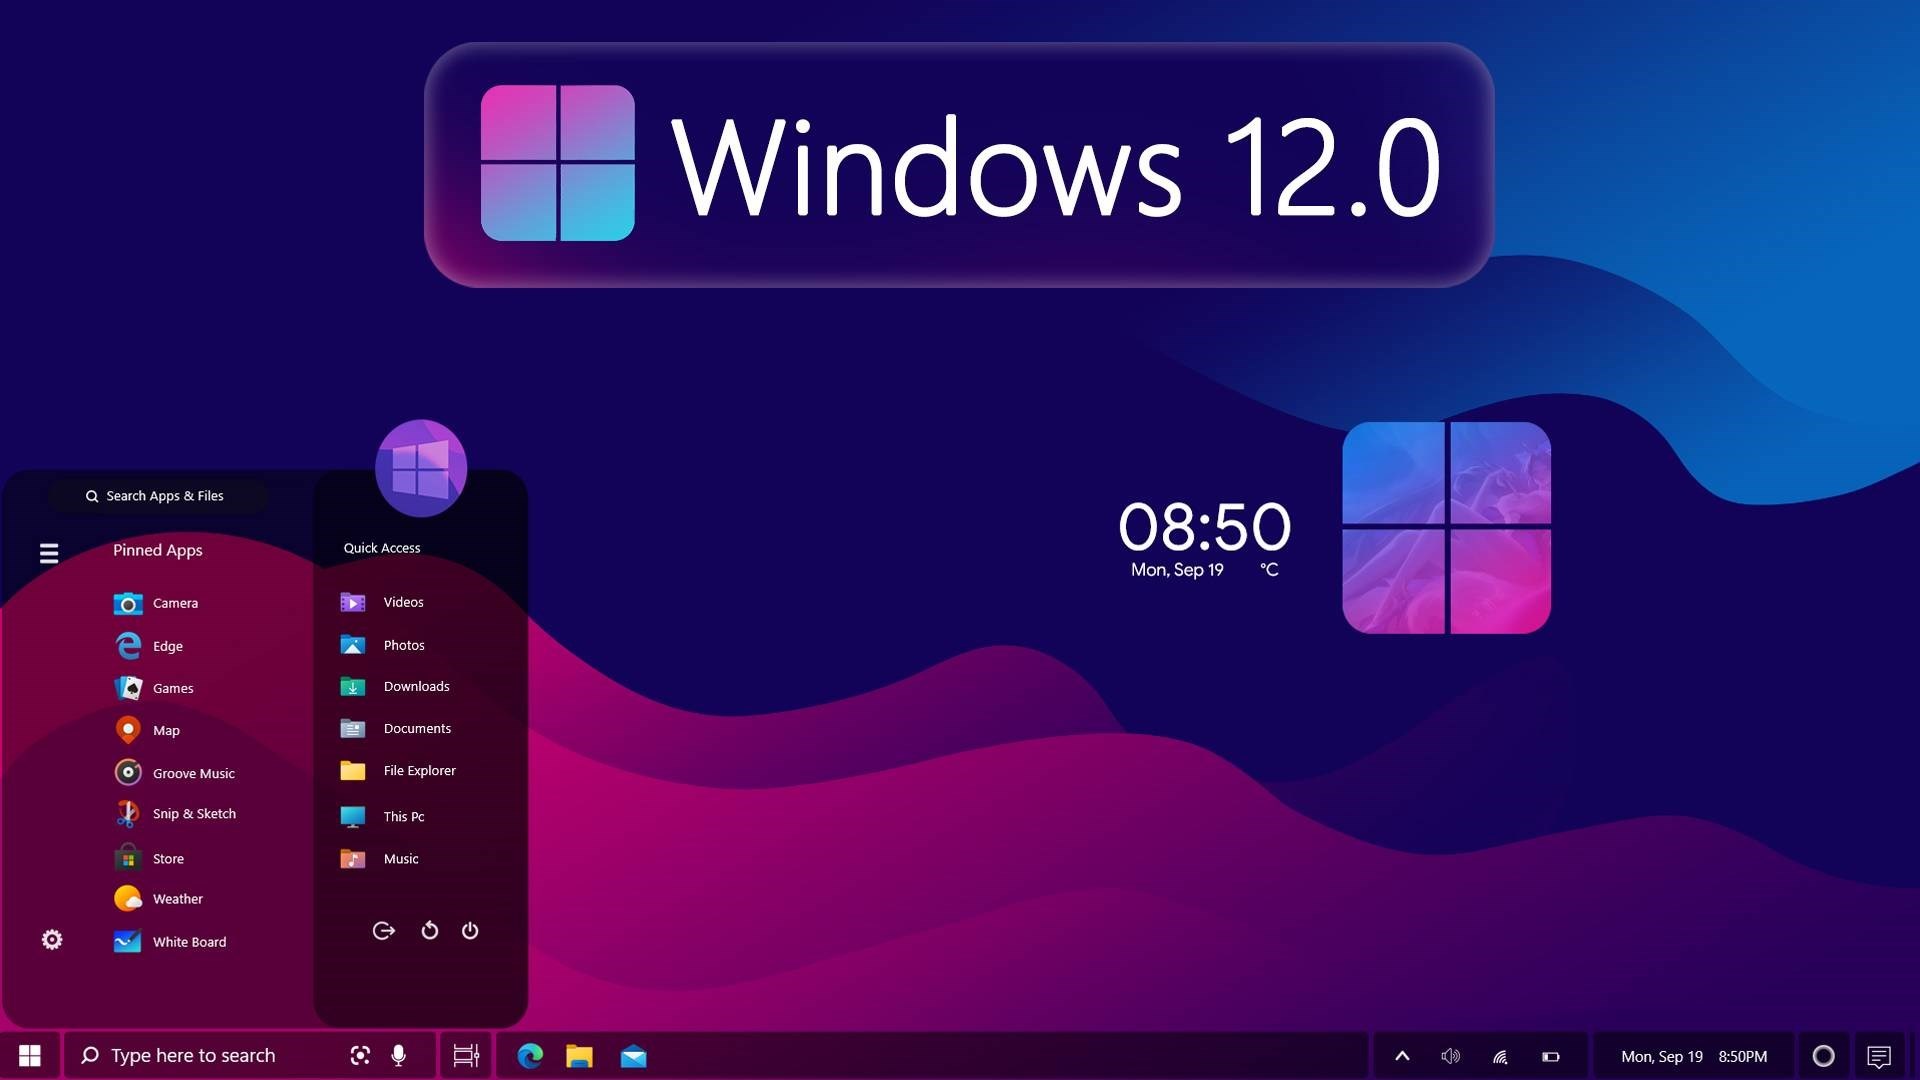 Microsoft Windows 12 Nin Web Odakli Surumunu Hazirliyor169367 1